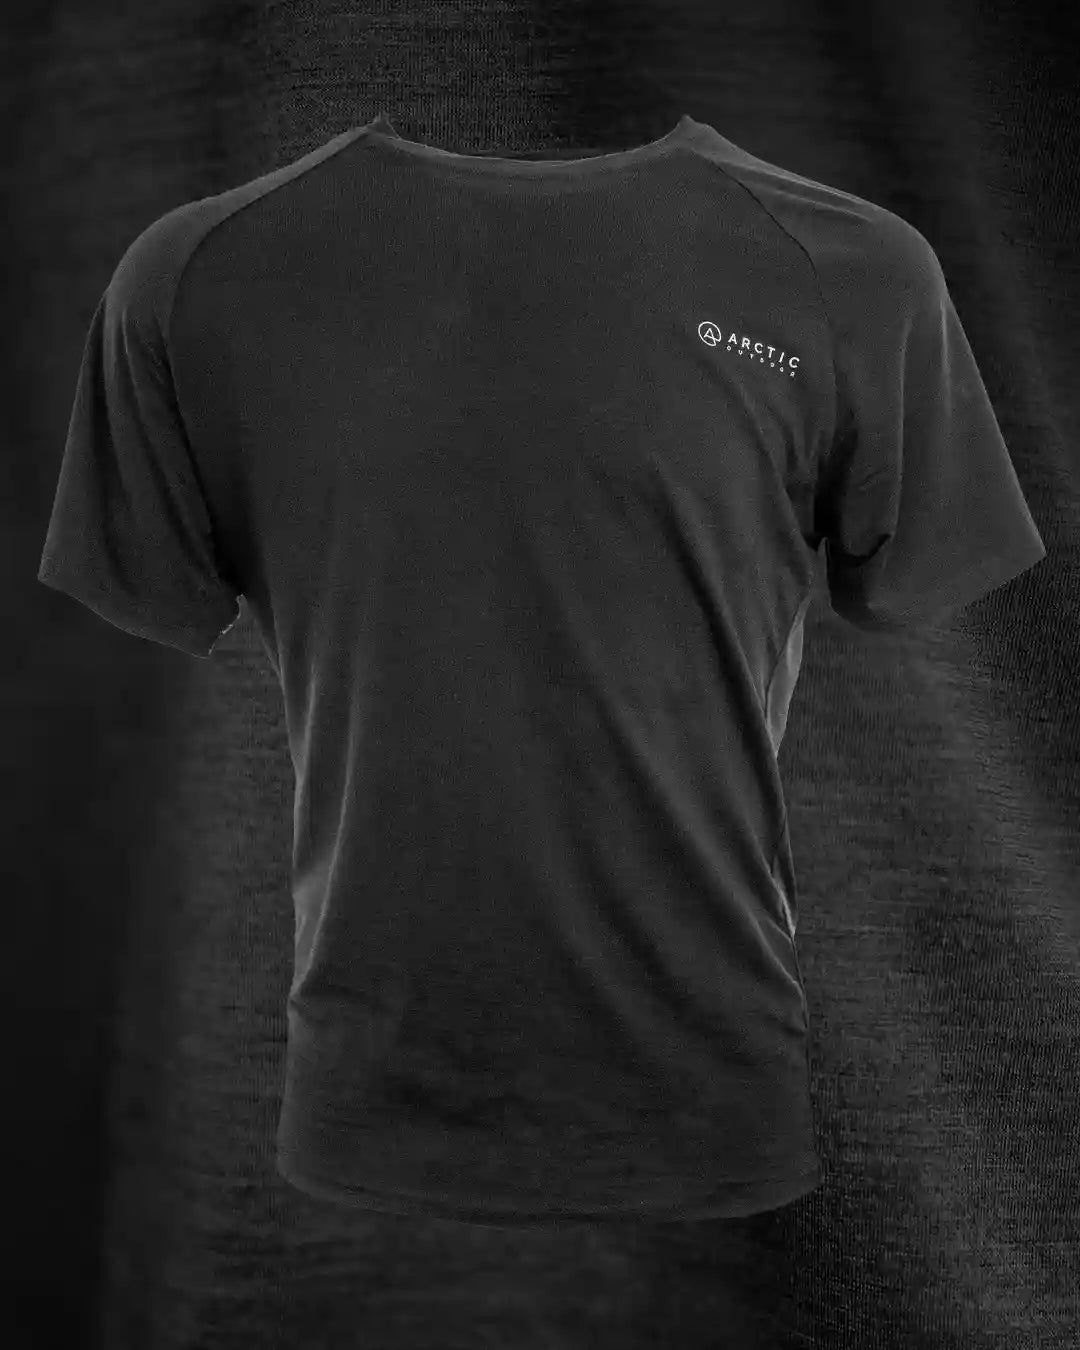 Produktbillede af sort merinould t-shirt